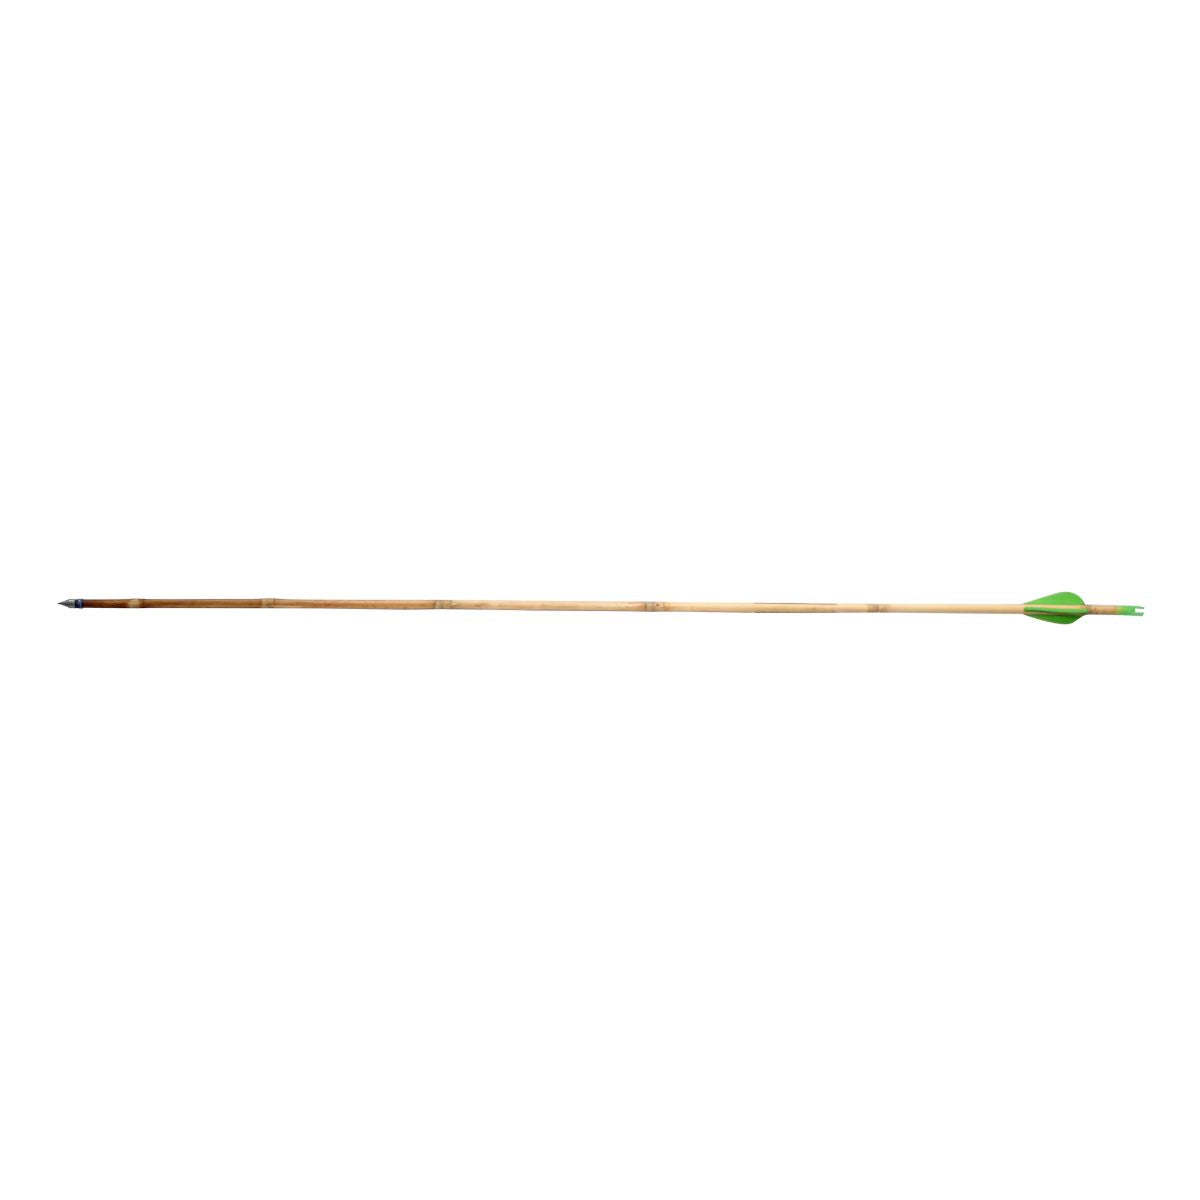 Formal Cane Arrow Set - ACA-05 1